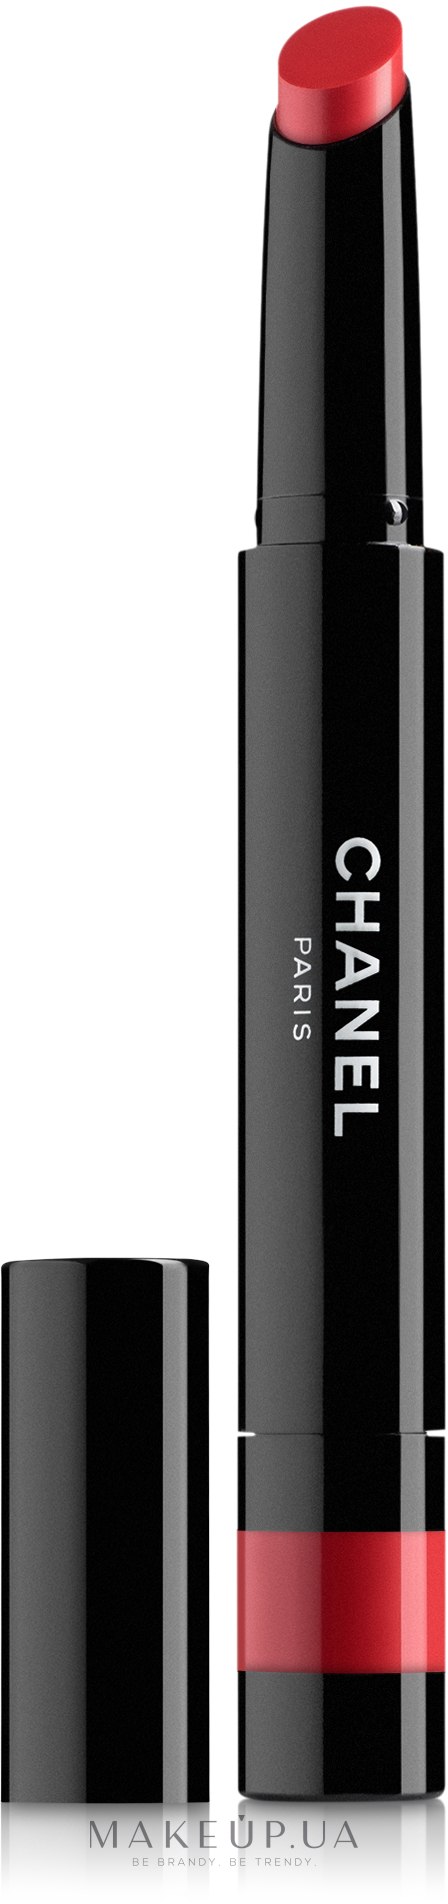 Новинка недели: помада-блеск Chanel Rouge Coco Stylo